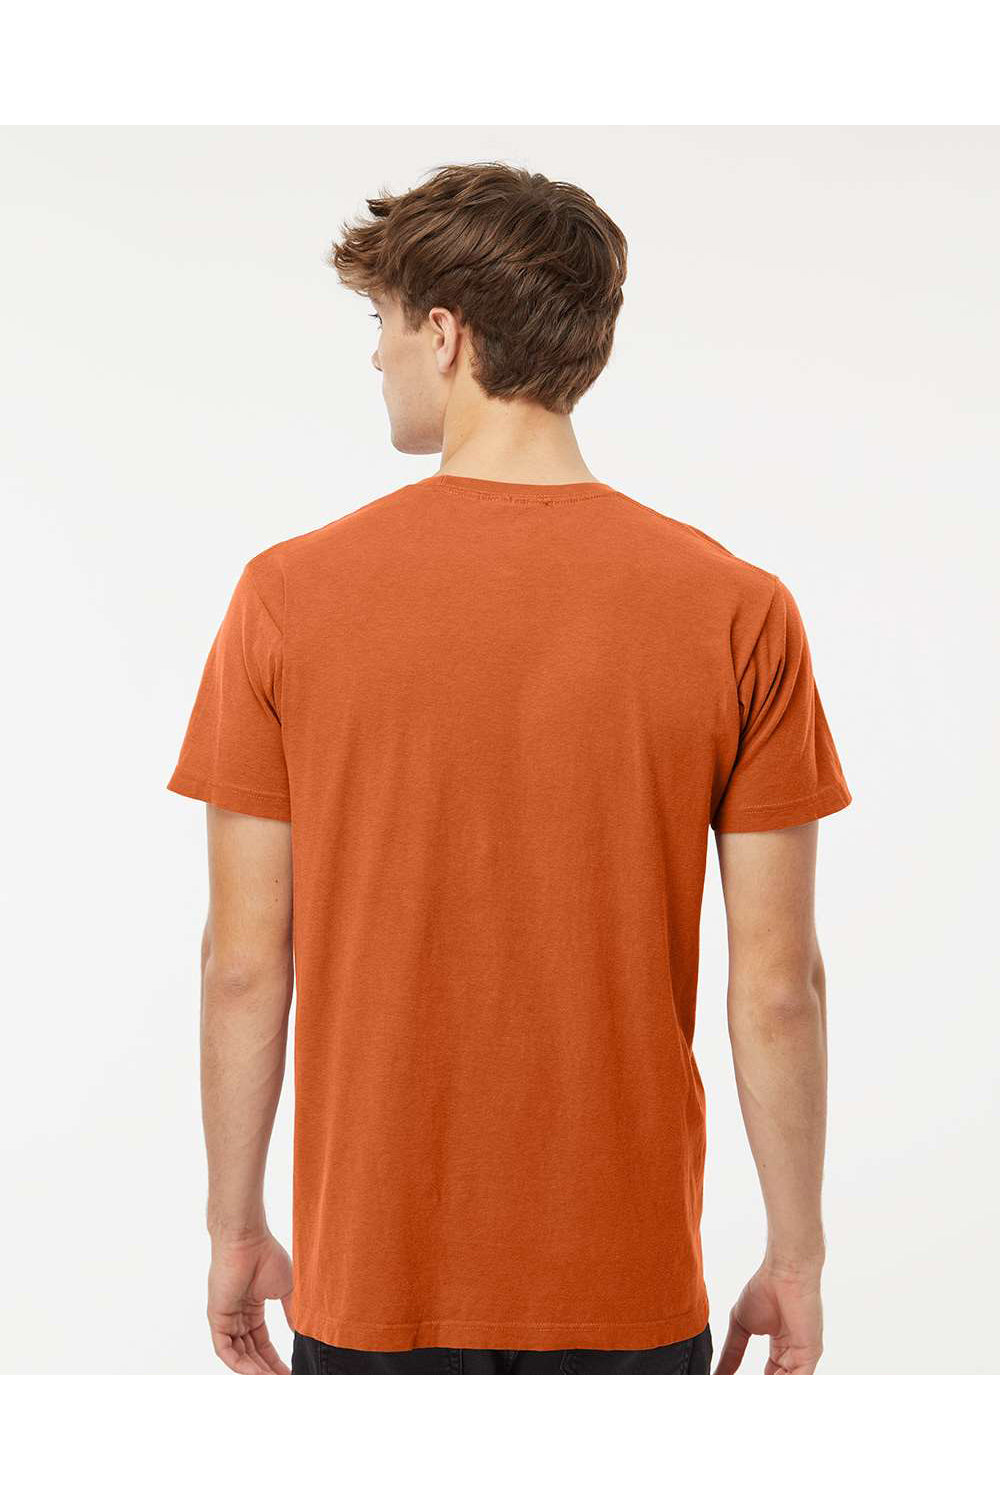 M&O 6500M Mens Vintage Garment Dyed Short Sleeve Crewneck T-Shirt Burnt Orange Model Back